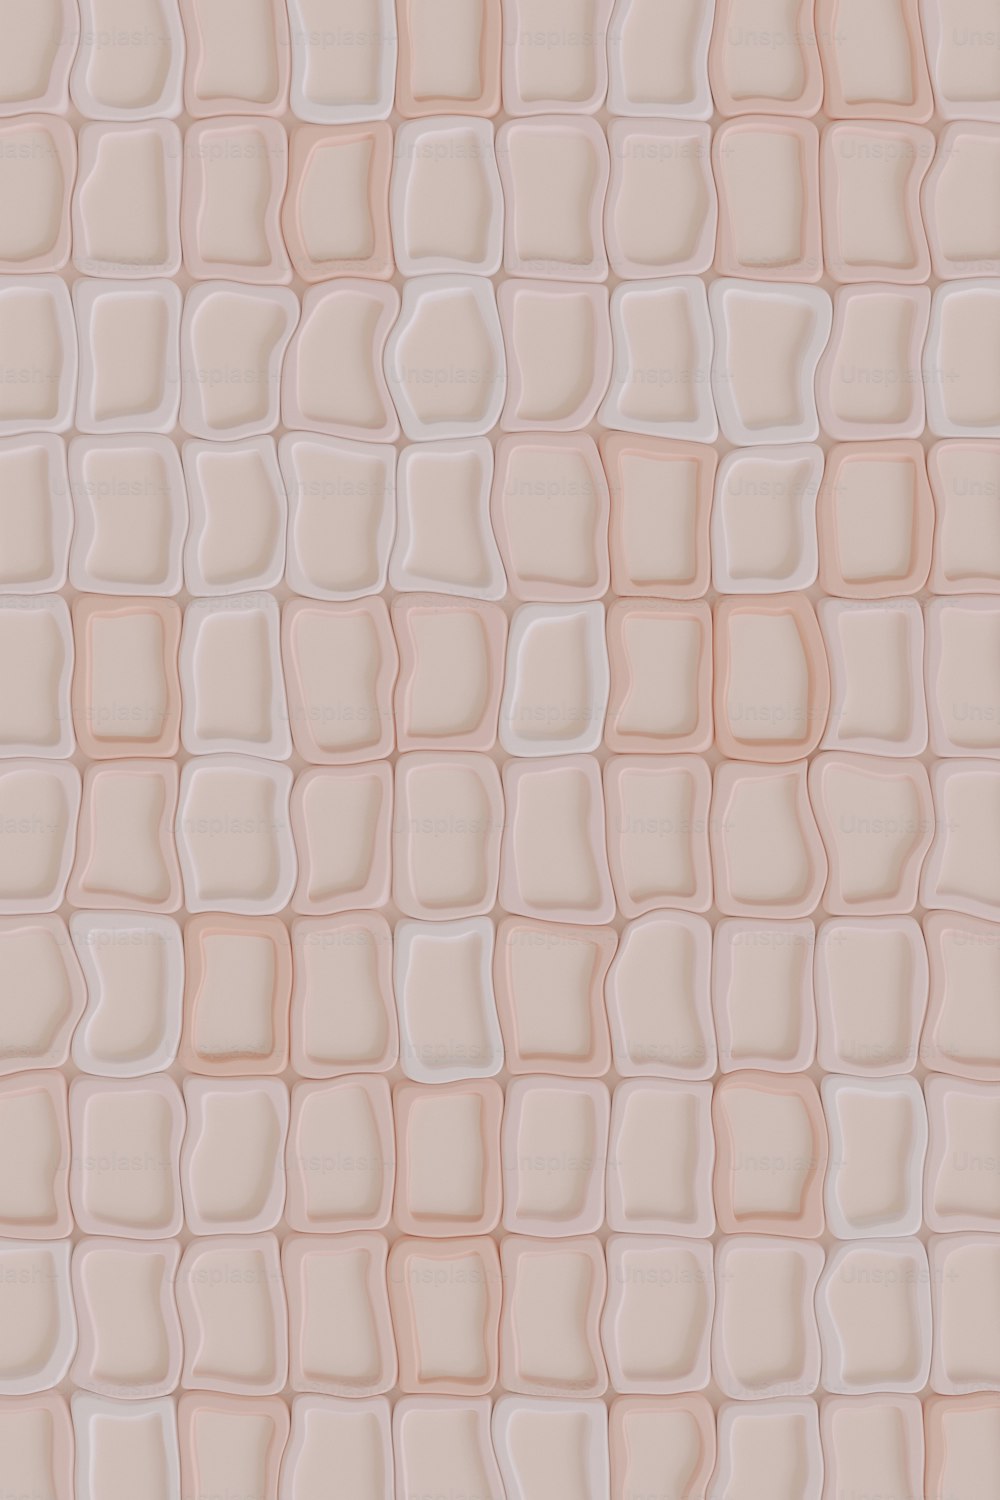 Un patrón de azulejos que parece estar hecho de vidrio